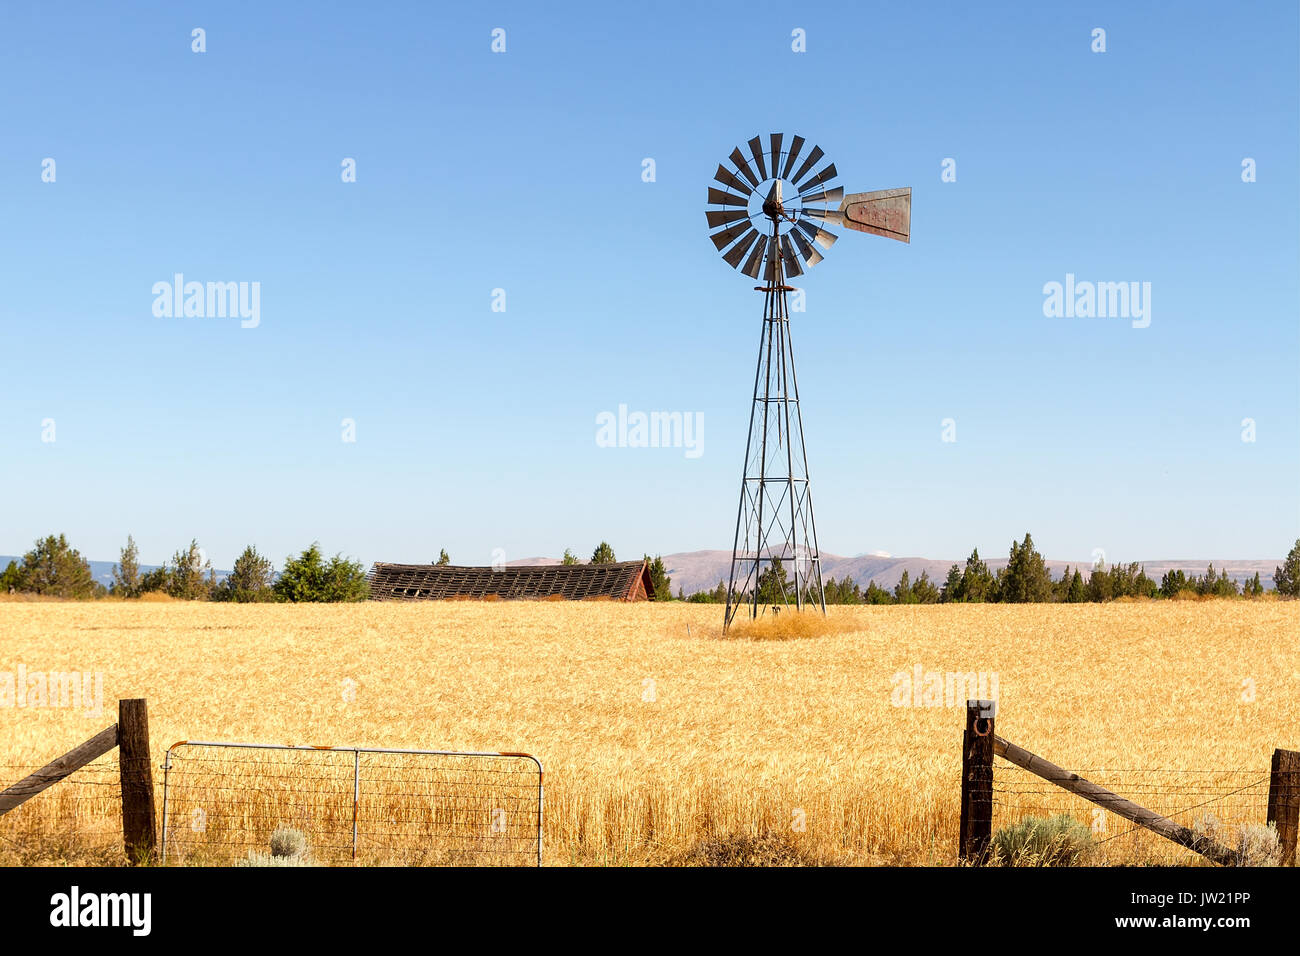 Le pompage de l'eau Moulin à champ de blé dans les régions rurales de l'Oregon central contre un fond de ciel bleu clair Banque D'Images